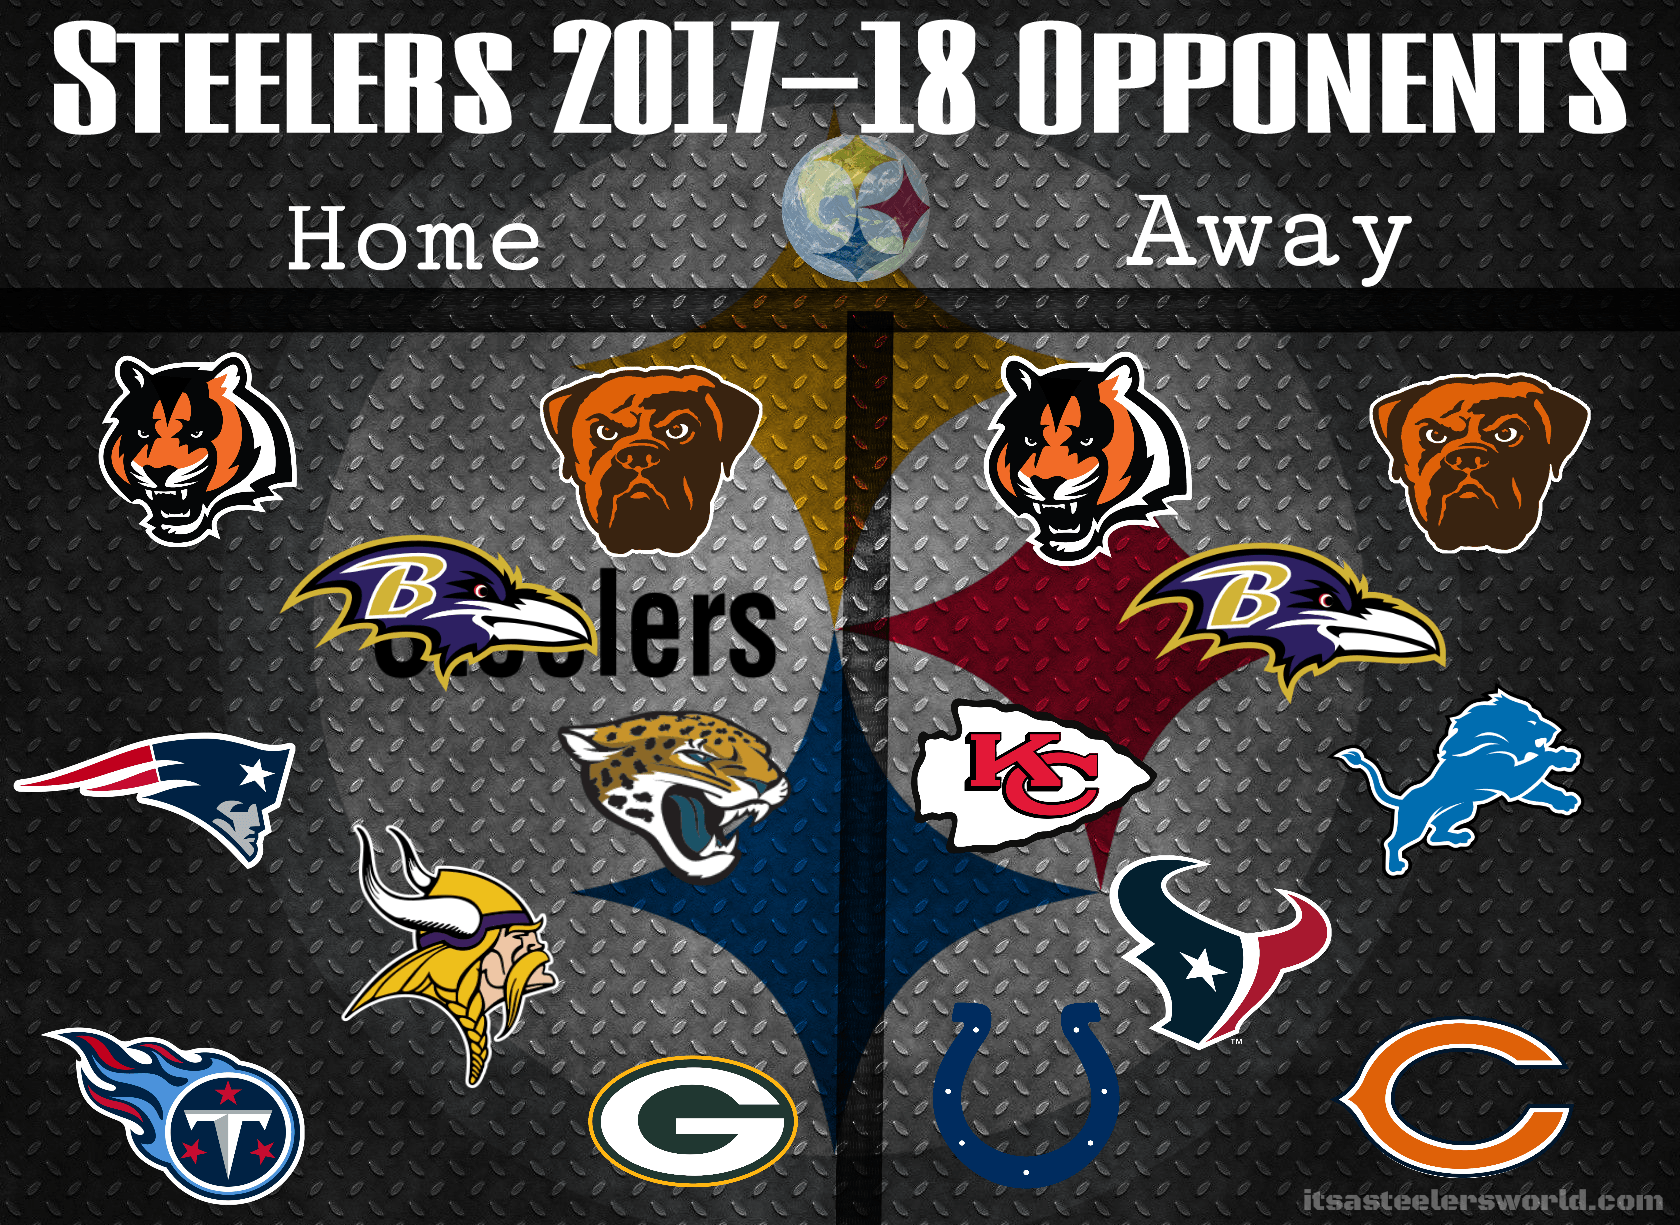 Steelers 2017 18 Opponents Wallpaper. IT'S A STEELERS WORLD!